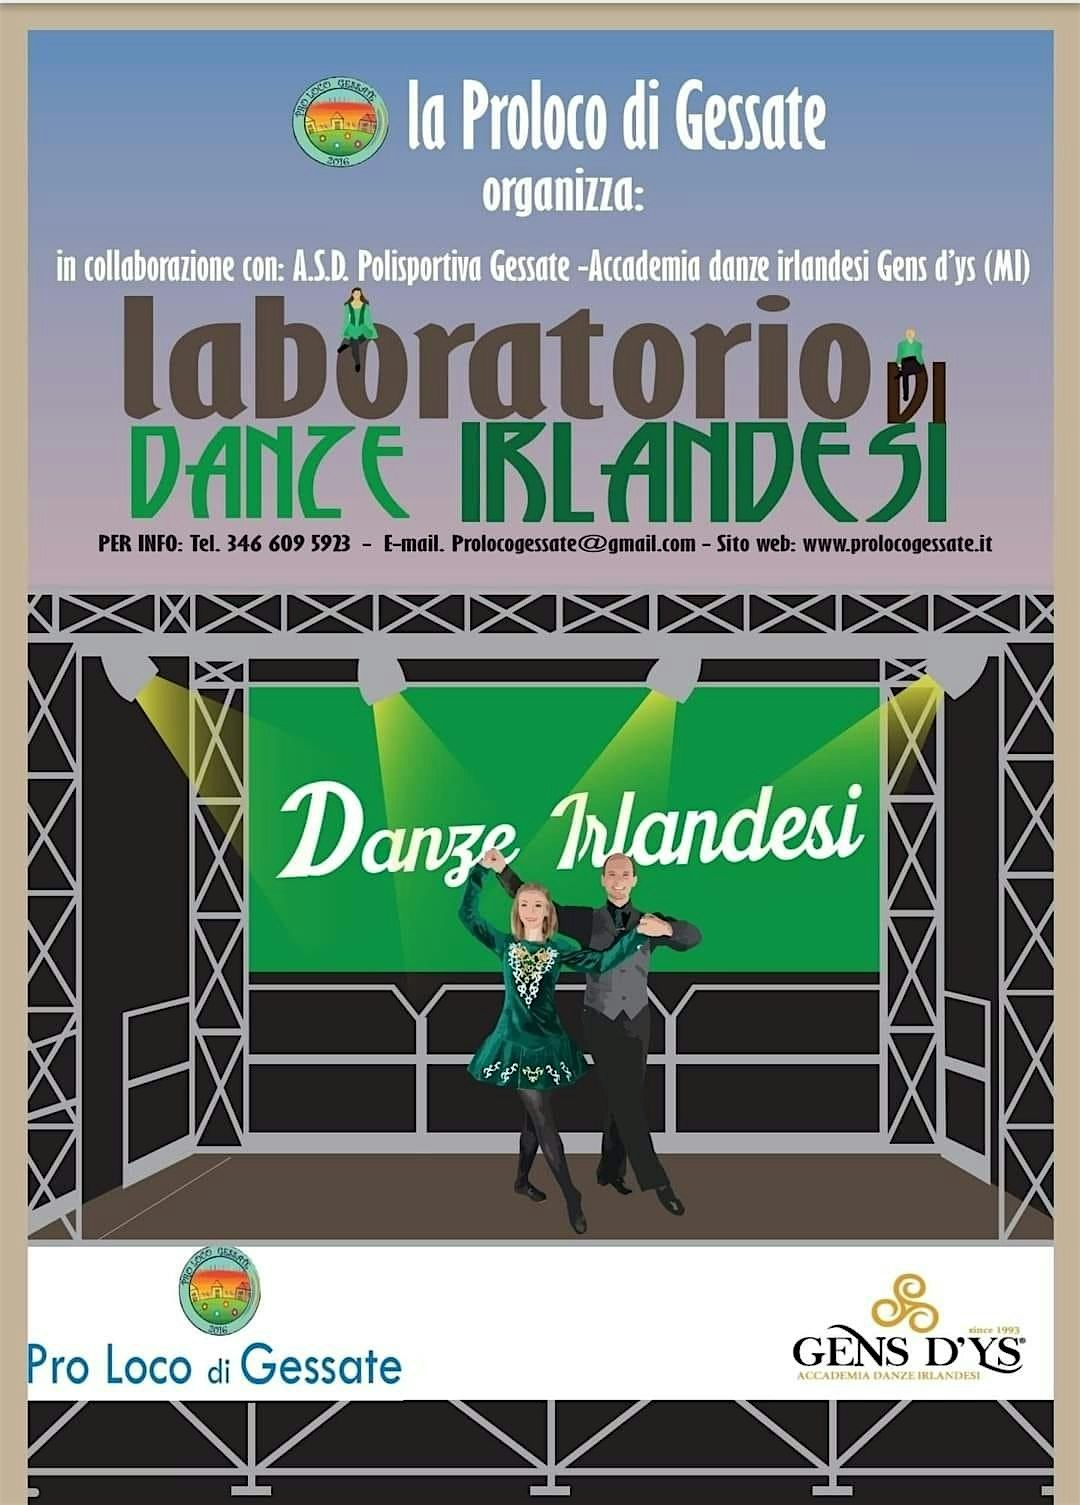 SAT, APR 9, 2022 - Danze Irlandesi - Gessate (MI)